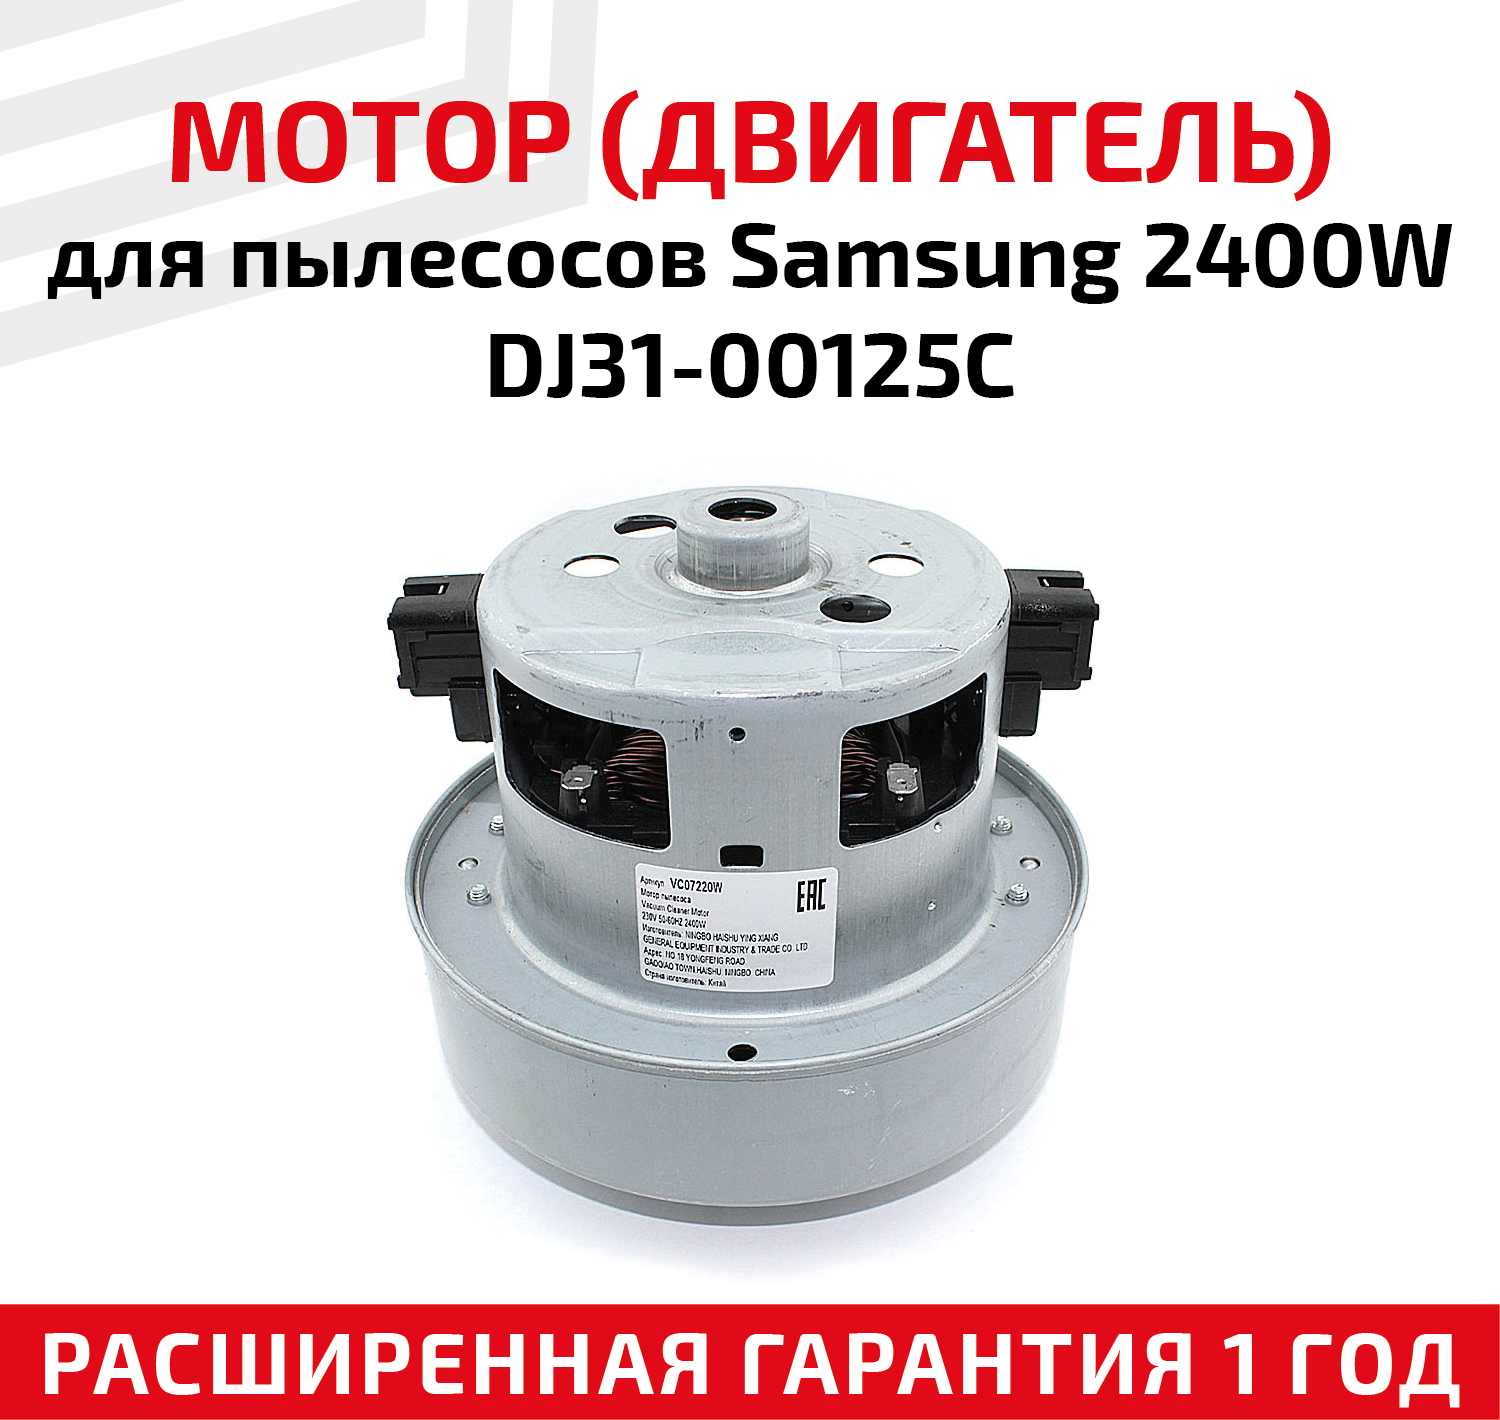 Двигатель для пылесоса Samsung 2400 Вт VCM-M30AU (DJ31-00125C) / L - 117 мм, D - 135 мм - фотография № 1